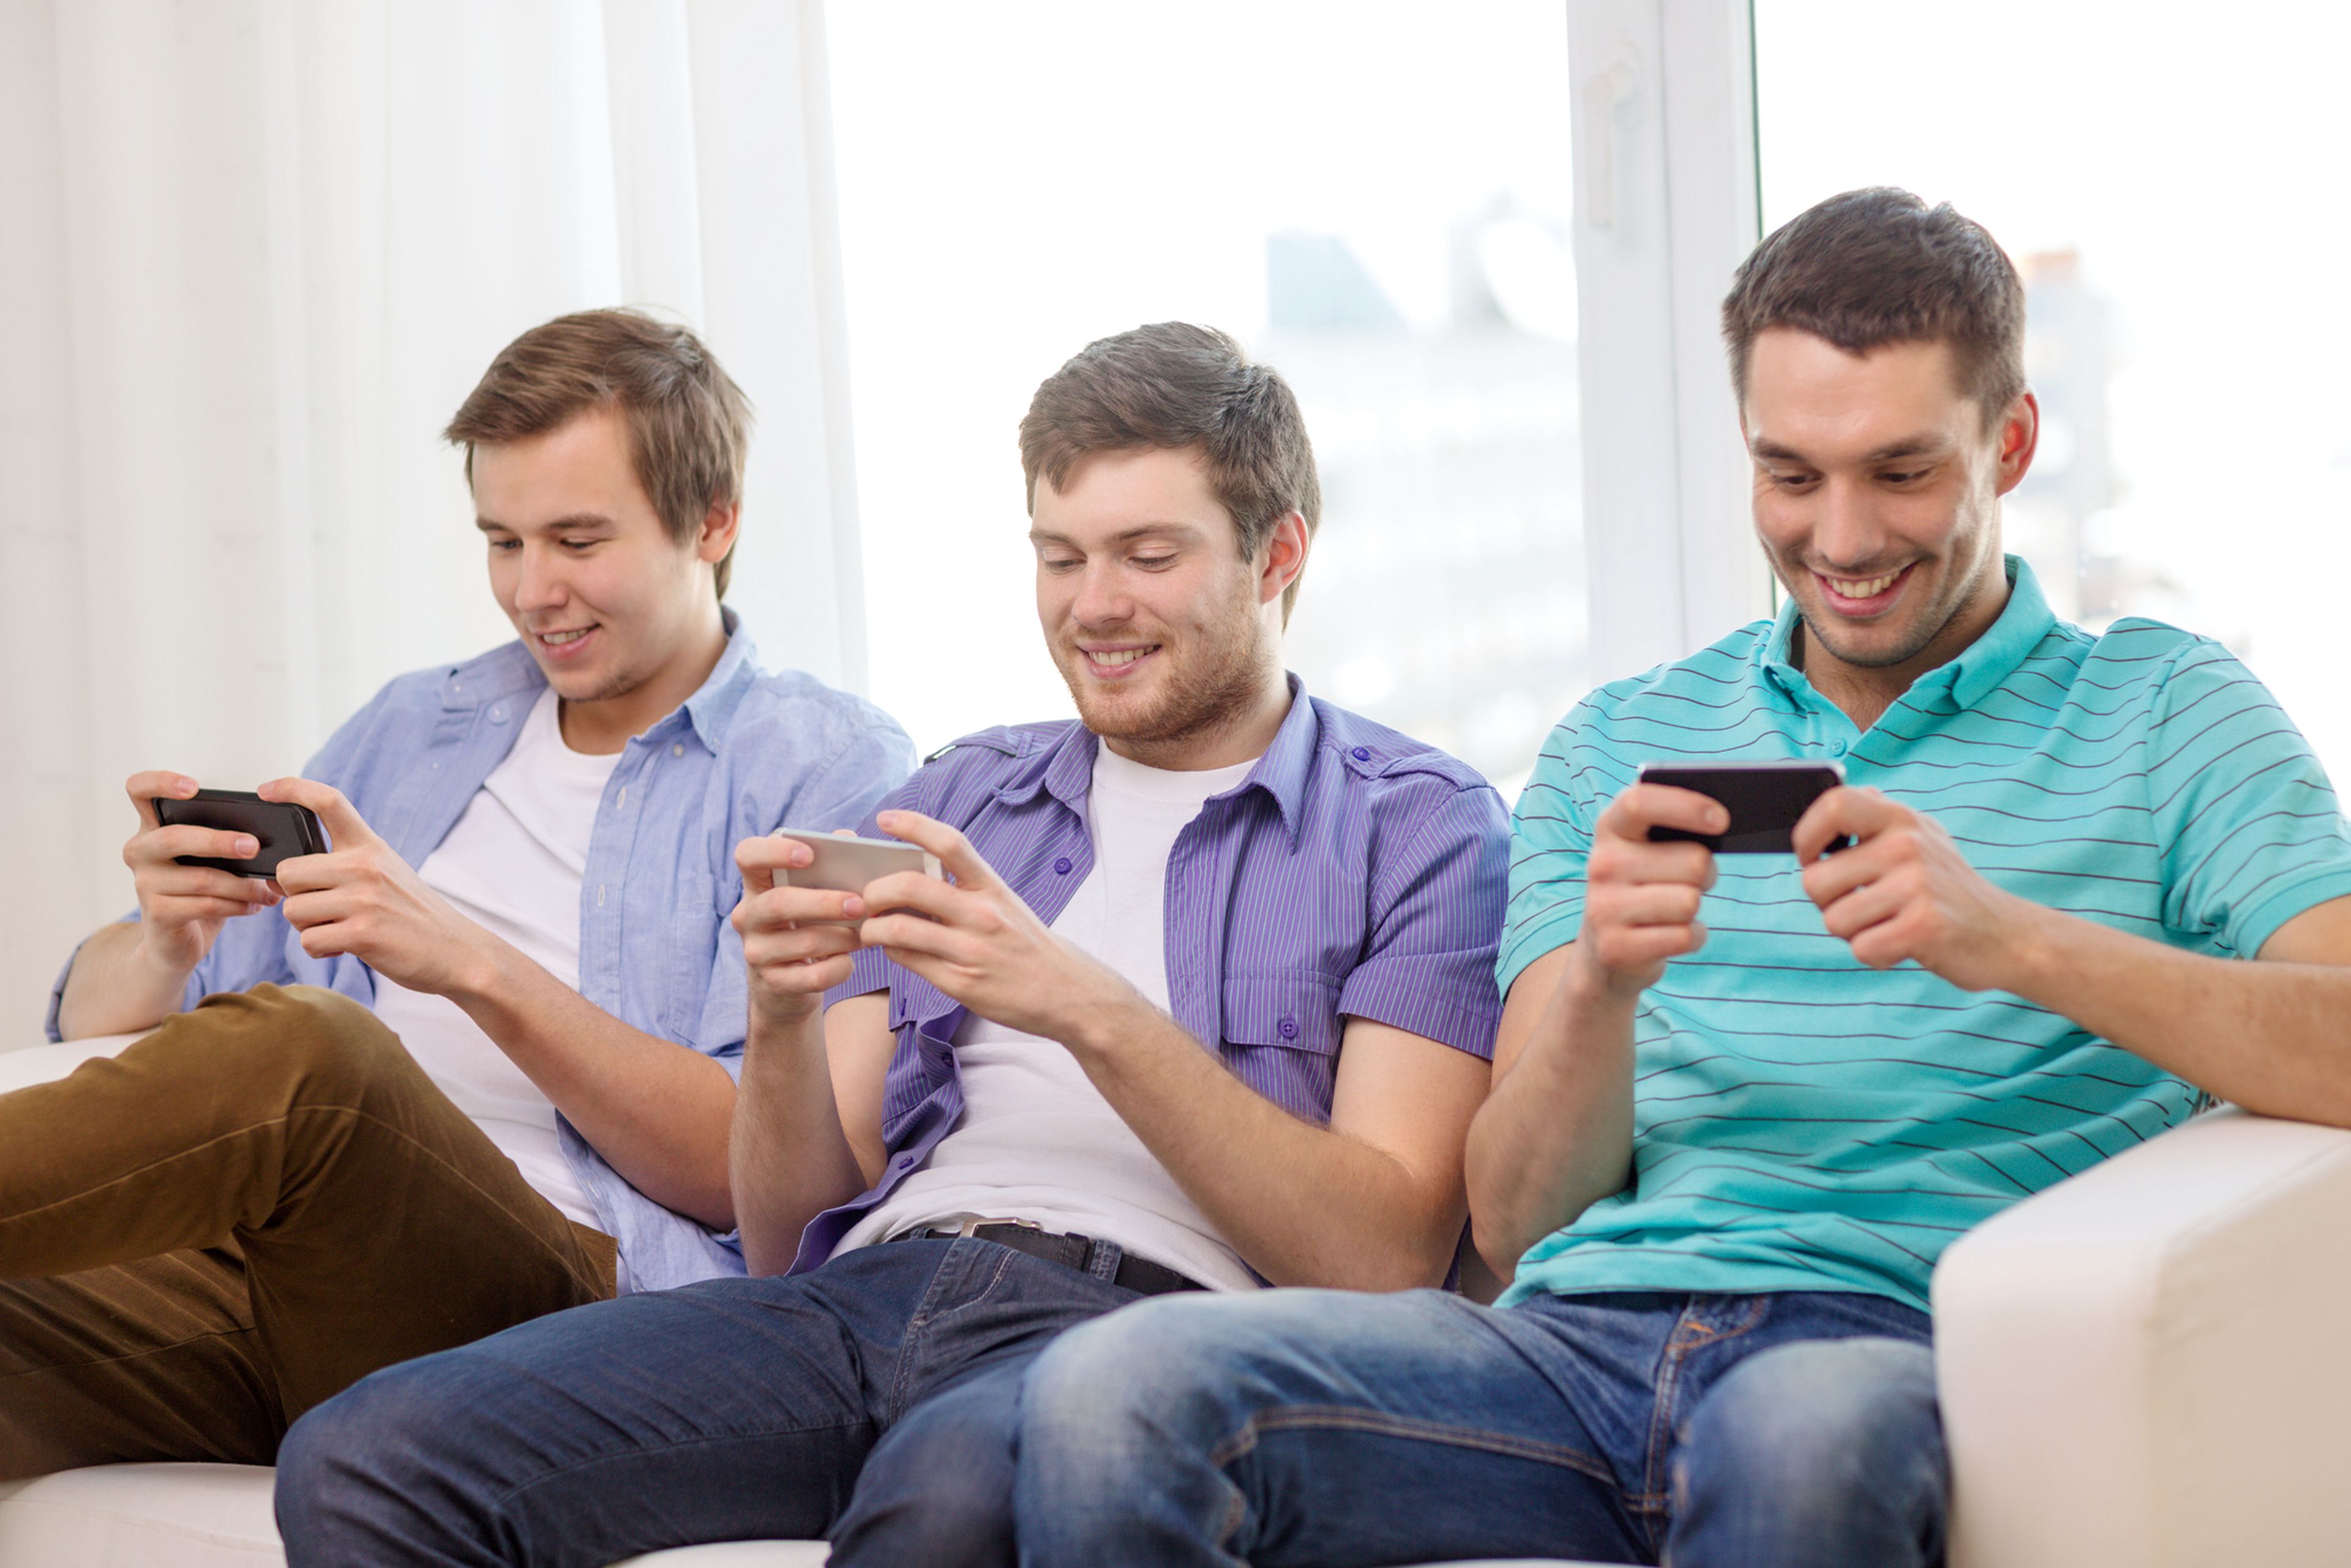 Aplicaciones para jugar 'online' con familia y amigos